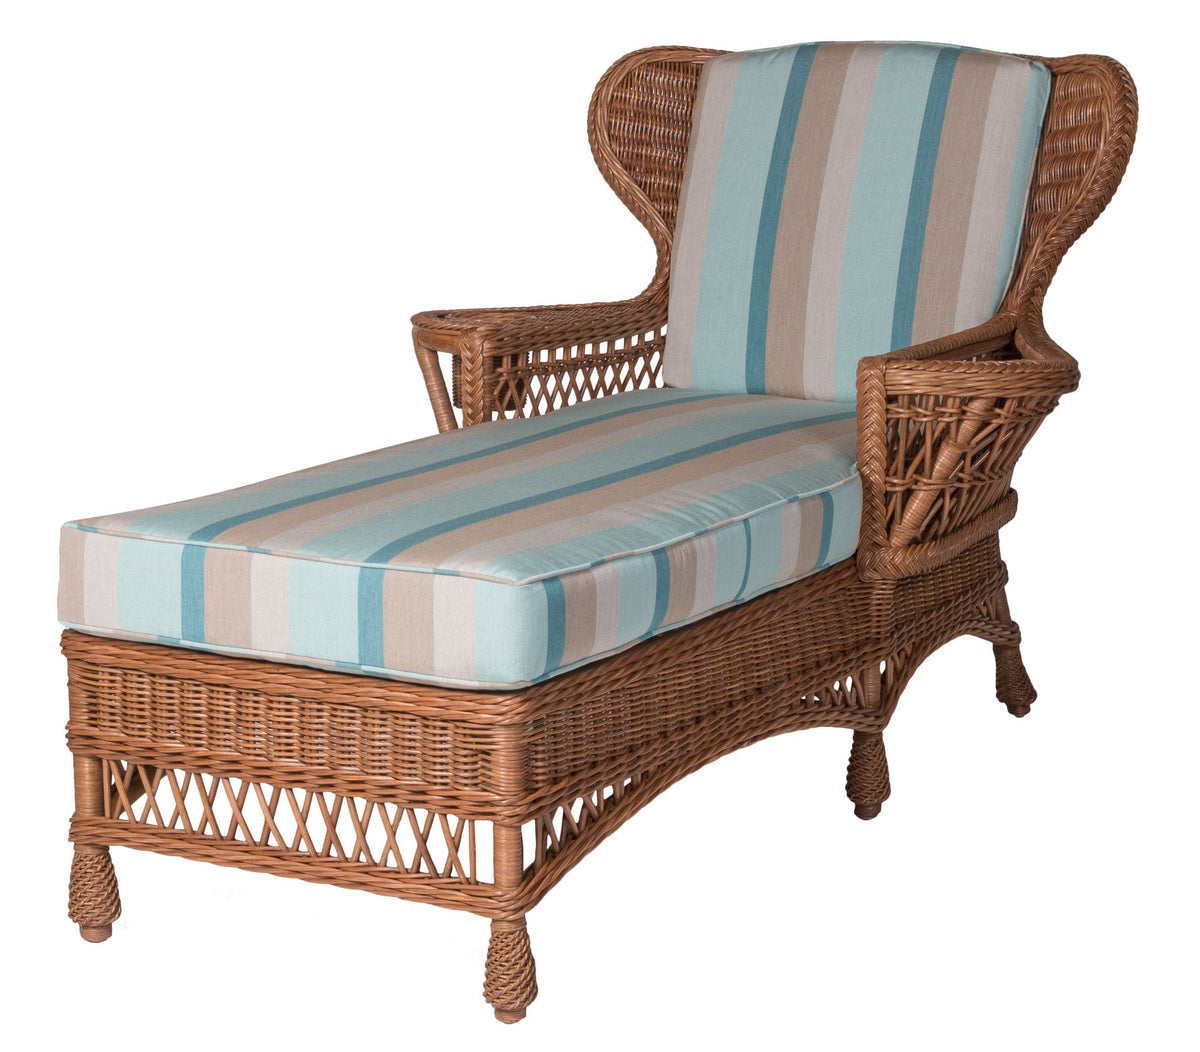 Designer Wicker &amp; Rattan By Tribor Concord Chaise by Designer Wicker from Tribor Lounge Chair - Rattan Imports